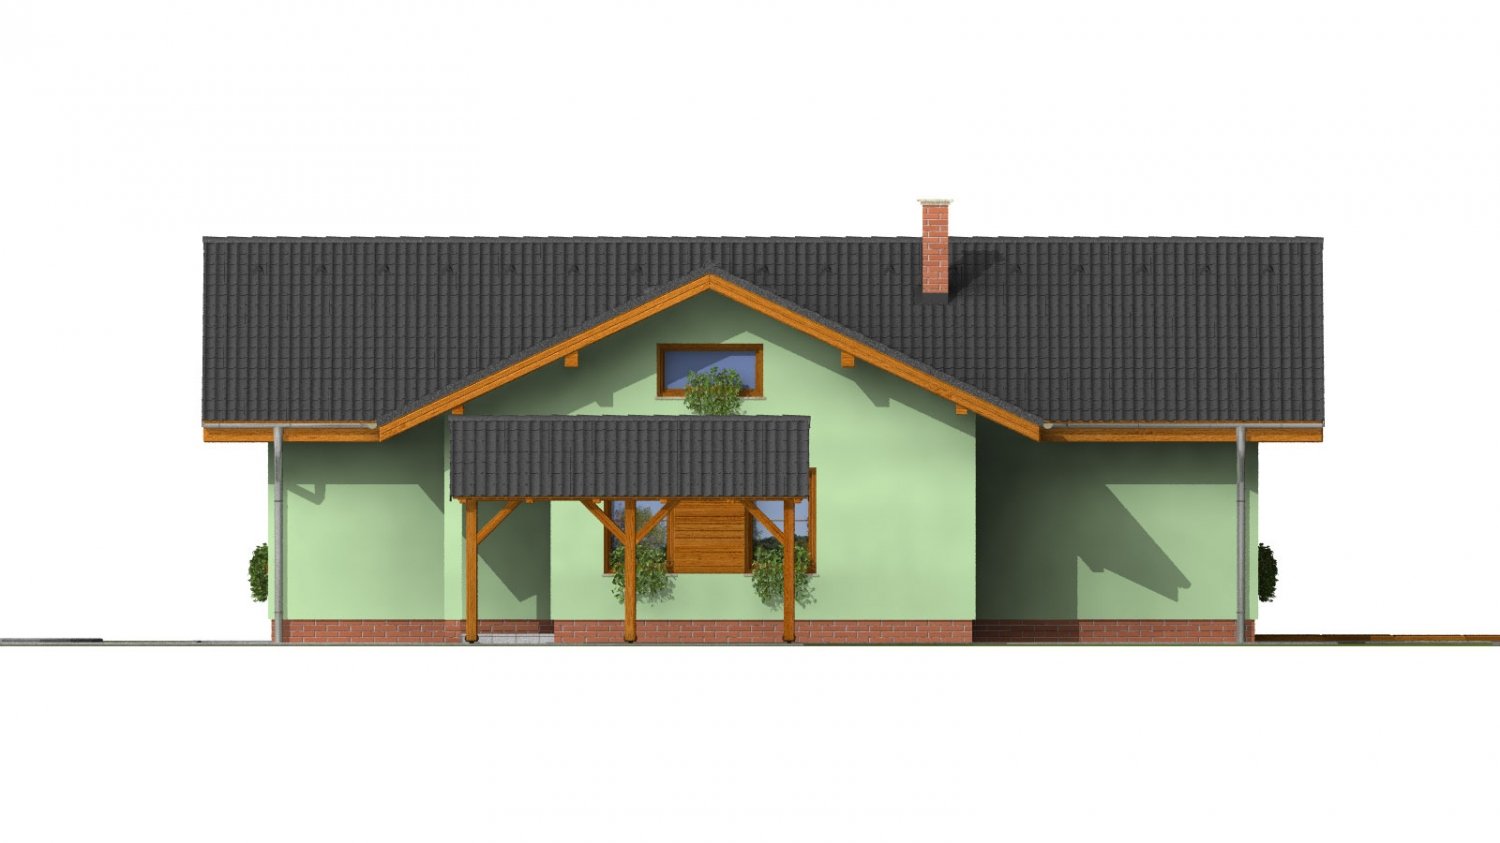 Zrkadlový pohľad 3. - Zděný dům s bočním vstupem a sedlovými střechami.